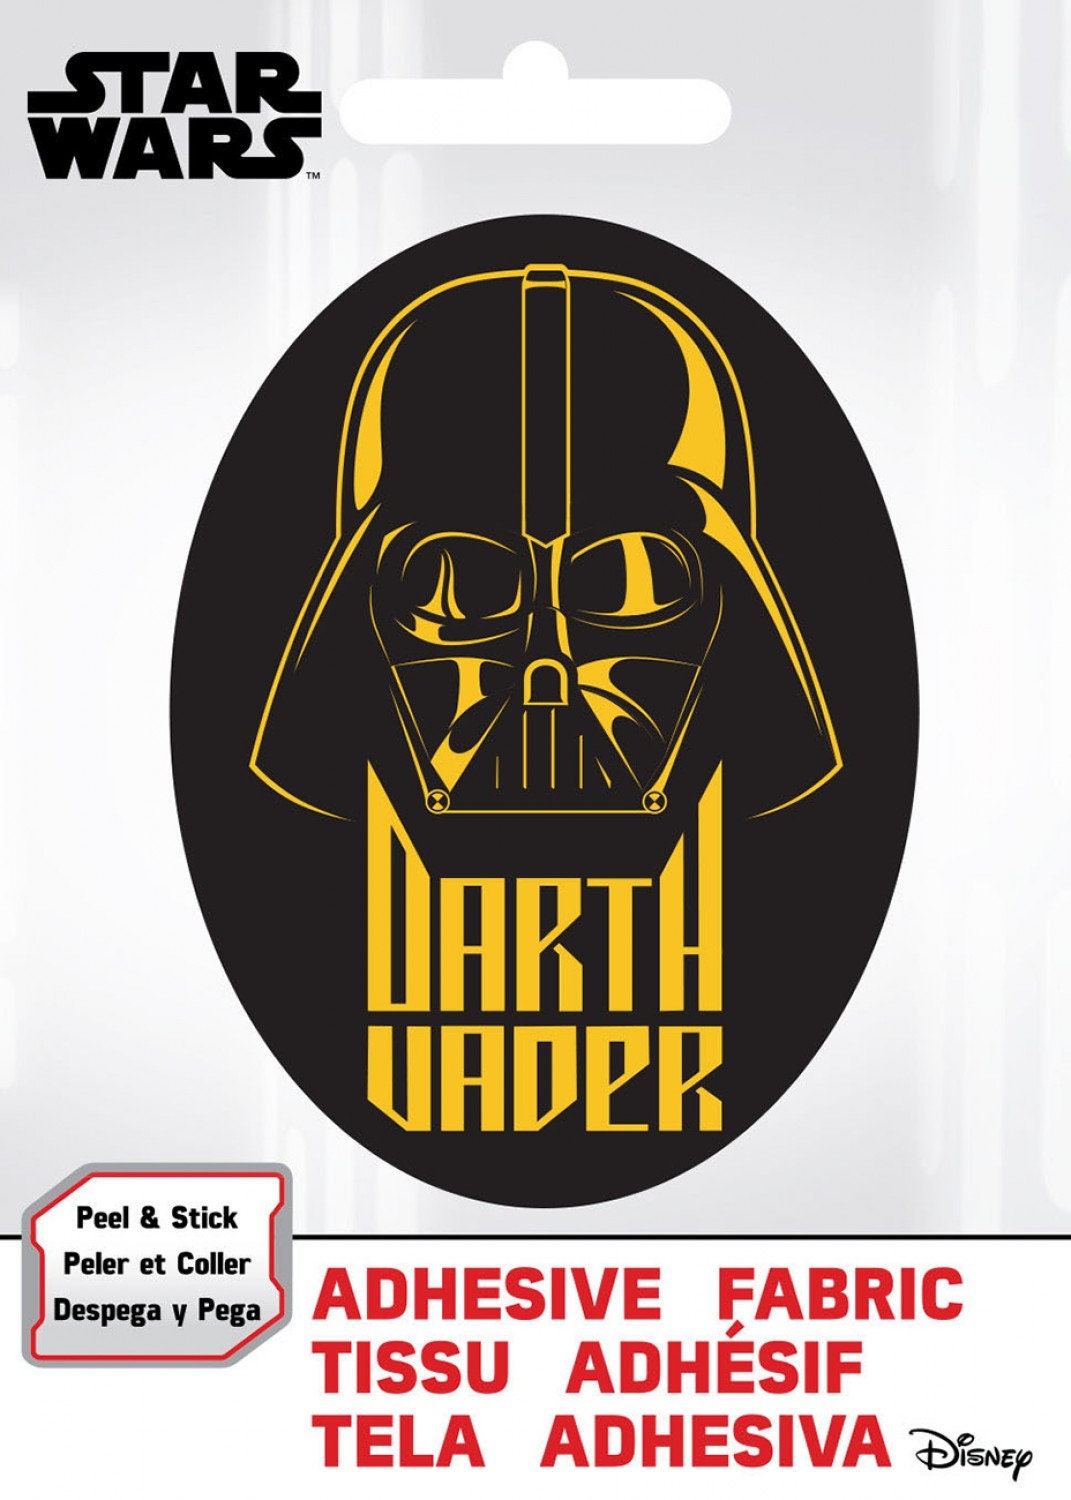 Ad Fab Adhesive Badge Star Wars SW Darth Vader Adhesive Fabric 3" Badge 73010422X 100% Polyester